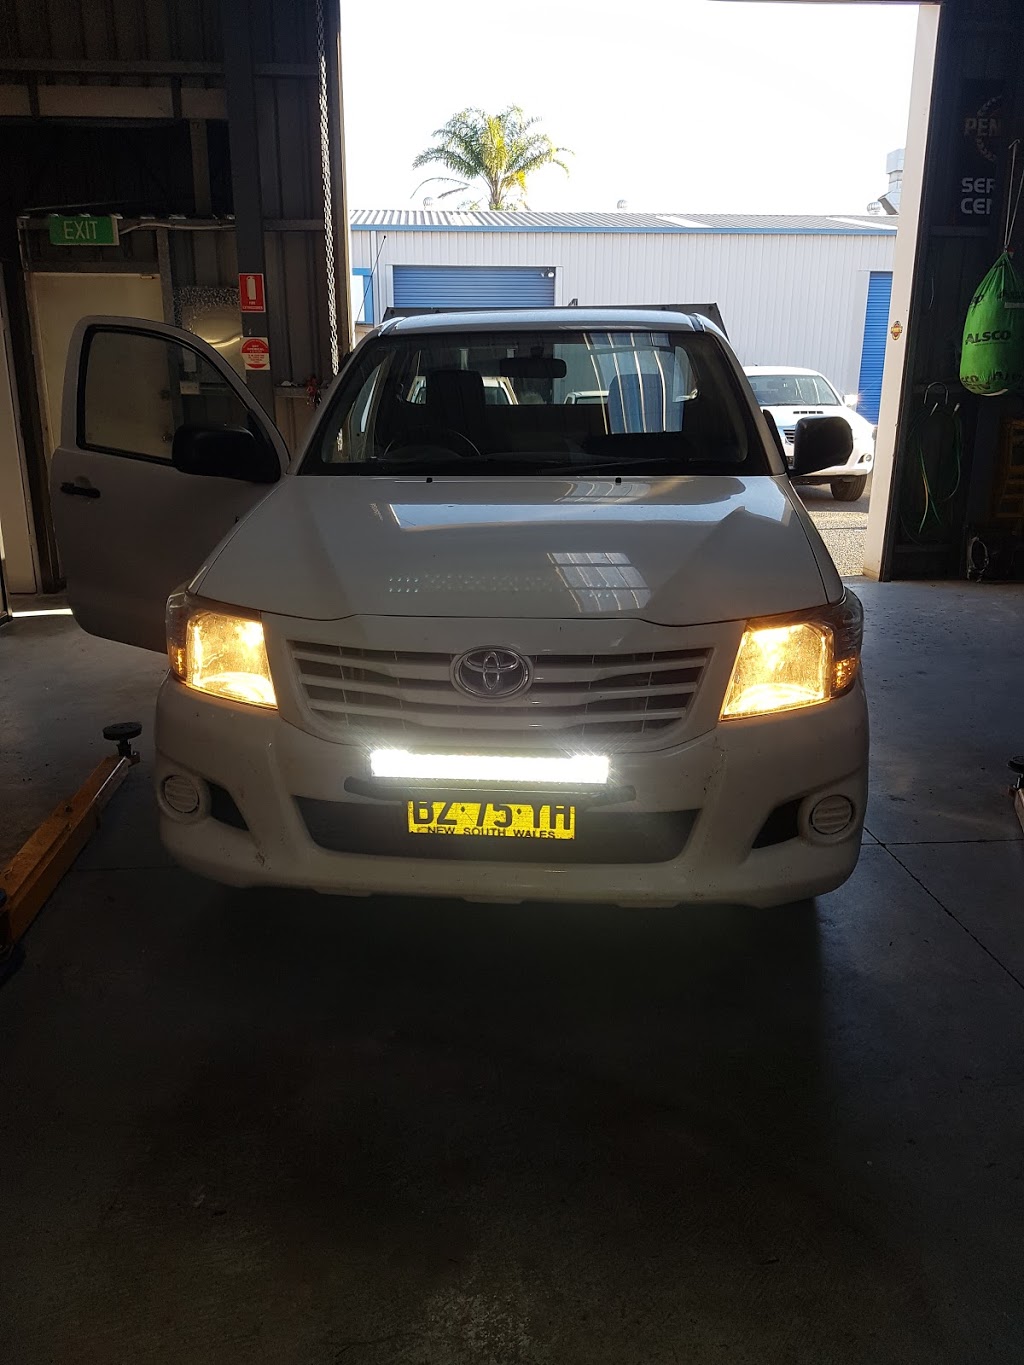 Auto Repair Solutions Unanderra | car repair | 9/20 Doyle Ave, Unanderra NSW 2526, Australia | 0403484355 OR +61 403 484 355